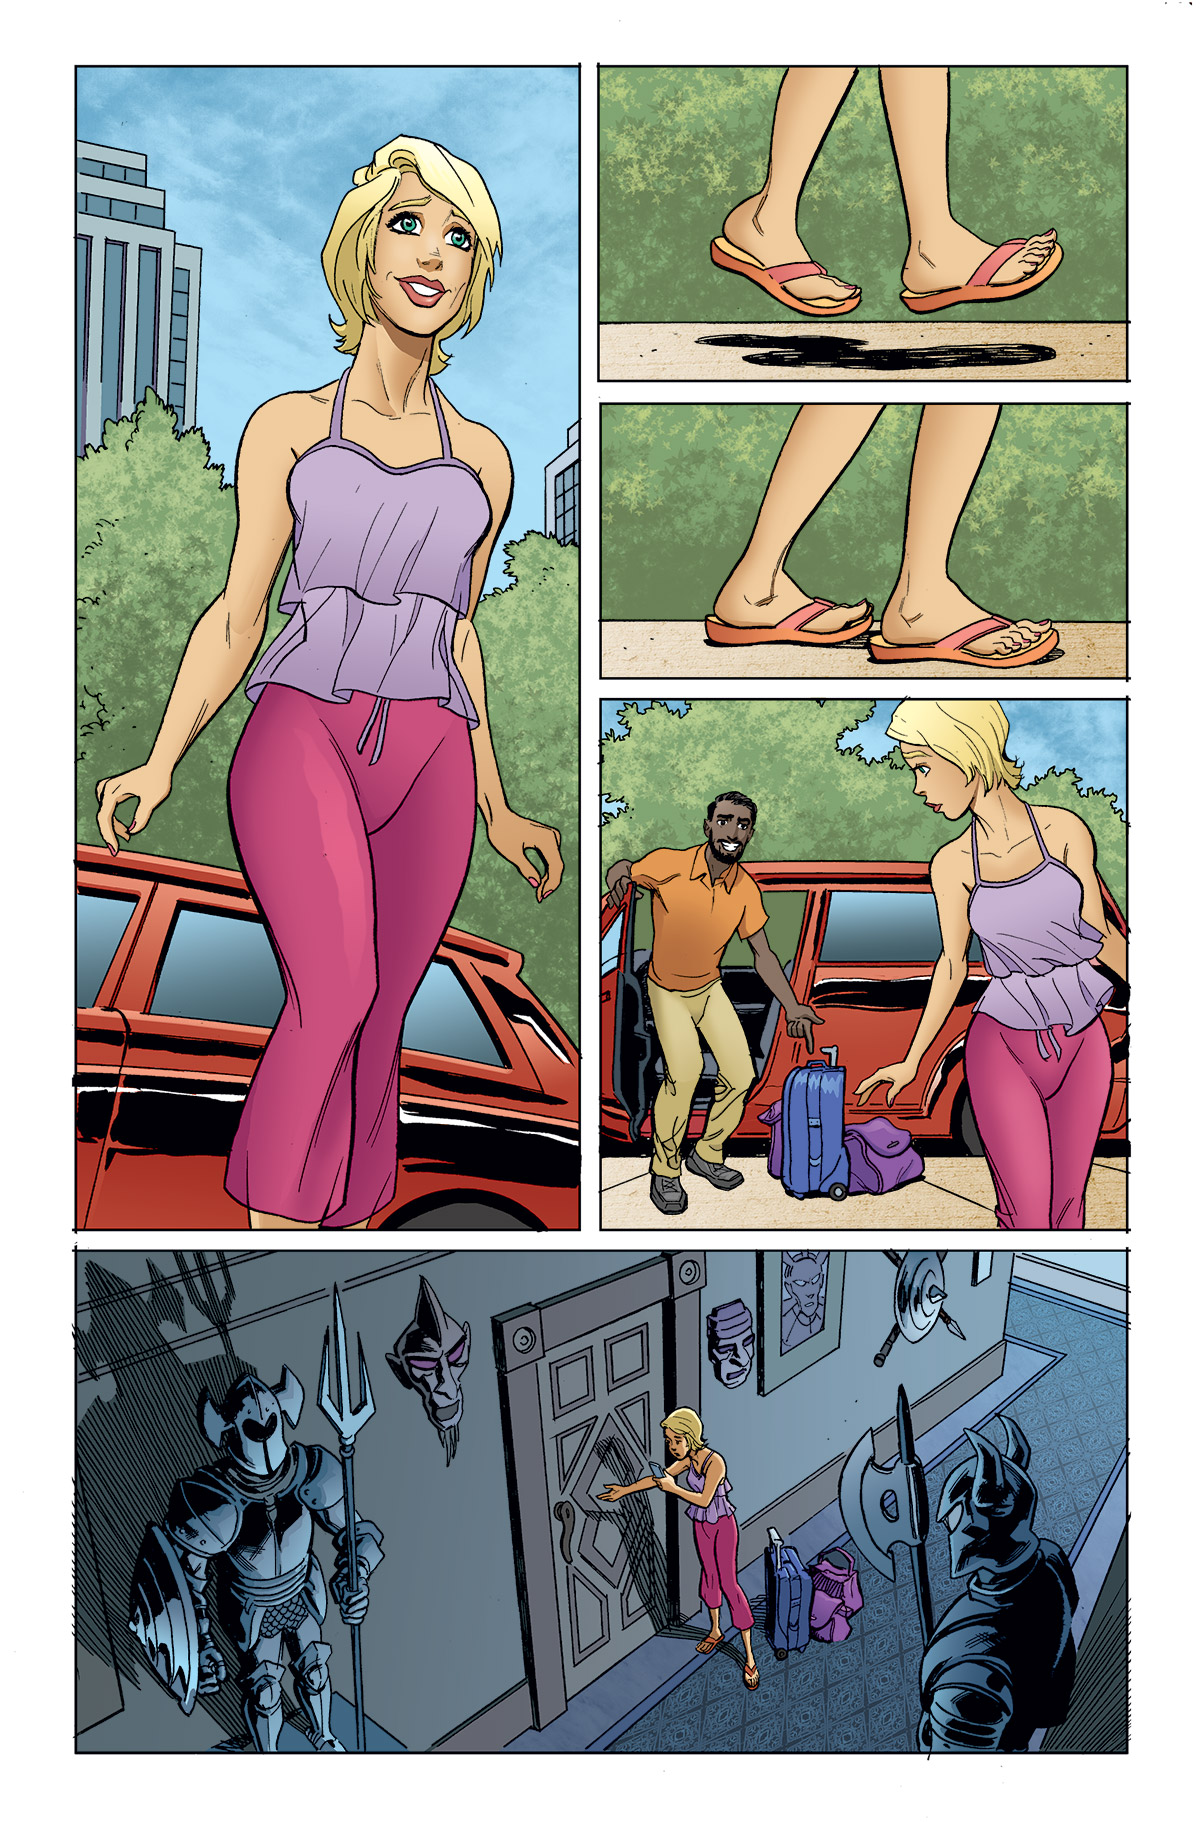 Giantess portals comics